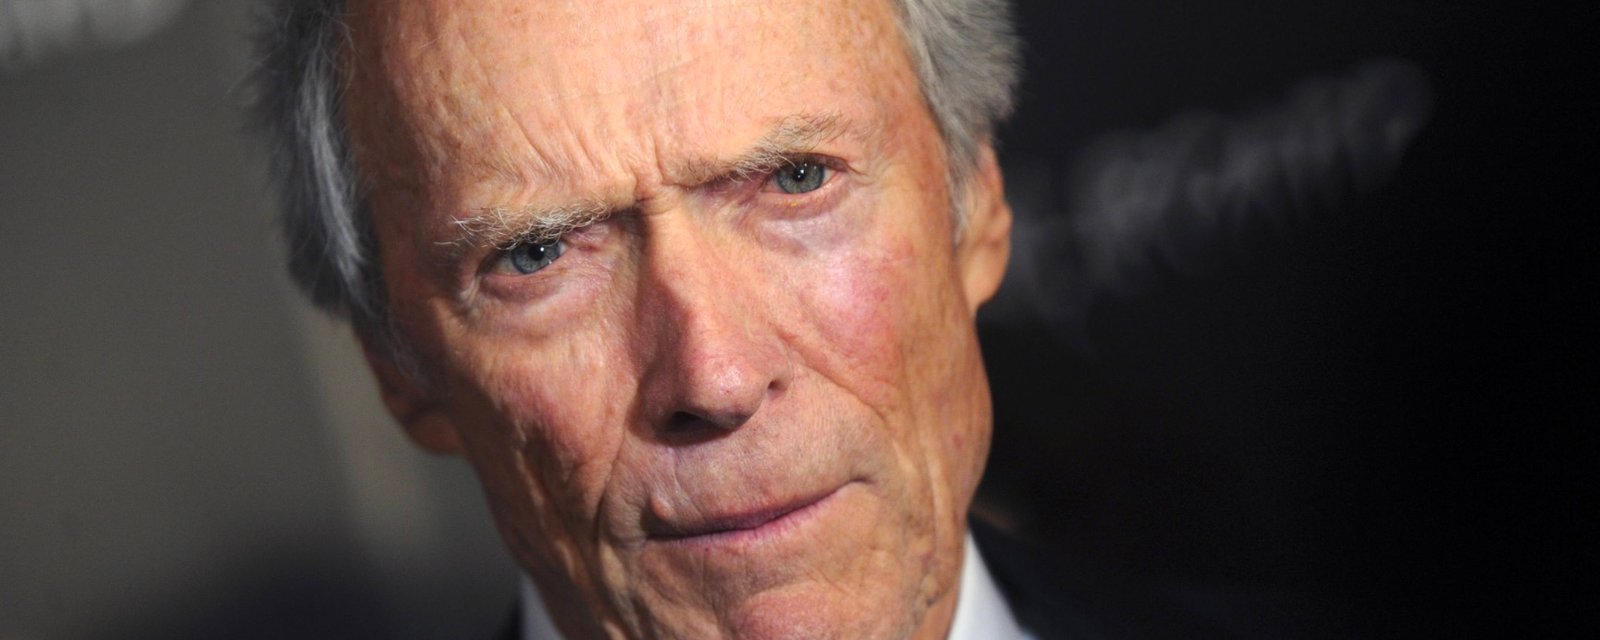 Le fils de Clint Eastwood ressemble à son père comme deux gouttes d'eau! 